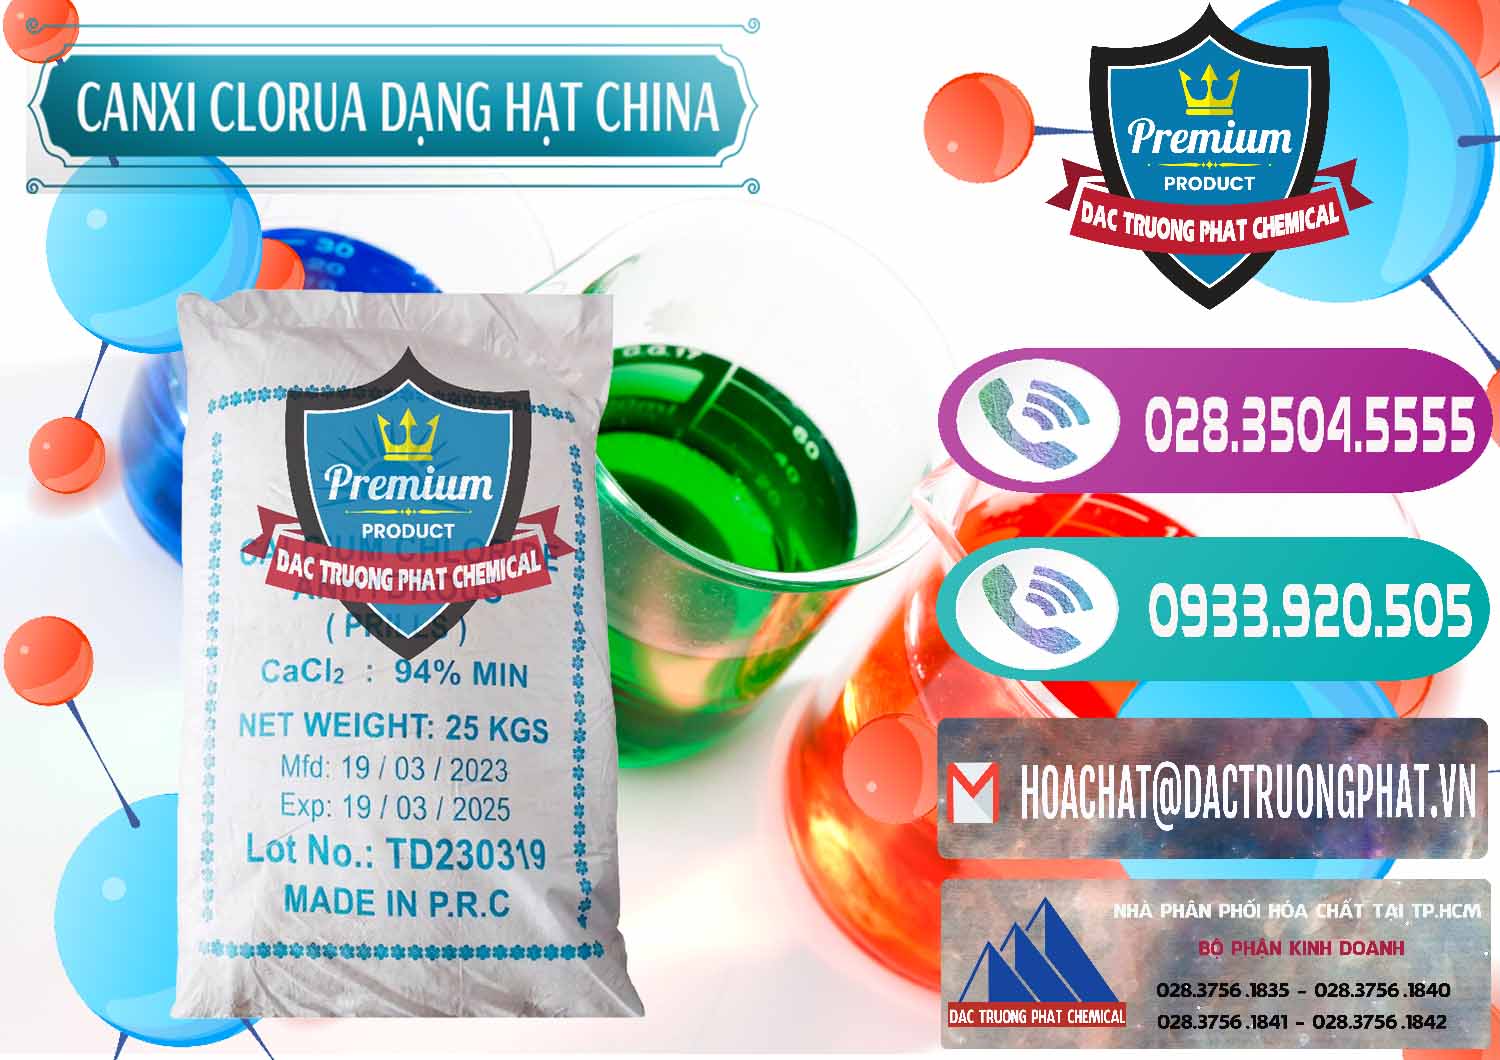 Cty bán ( cung cấp ) CaCl2 – Canxi Clorua 94% Dạng Hạt Trung Quốc China - 0373 - Chuyên cung cấp - bán hóa chất tại TP.HCM - hoachatxulynuoc.com